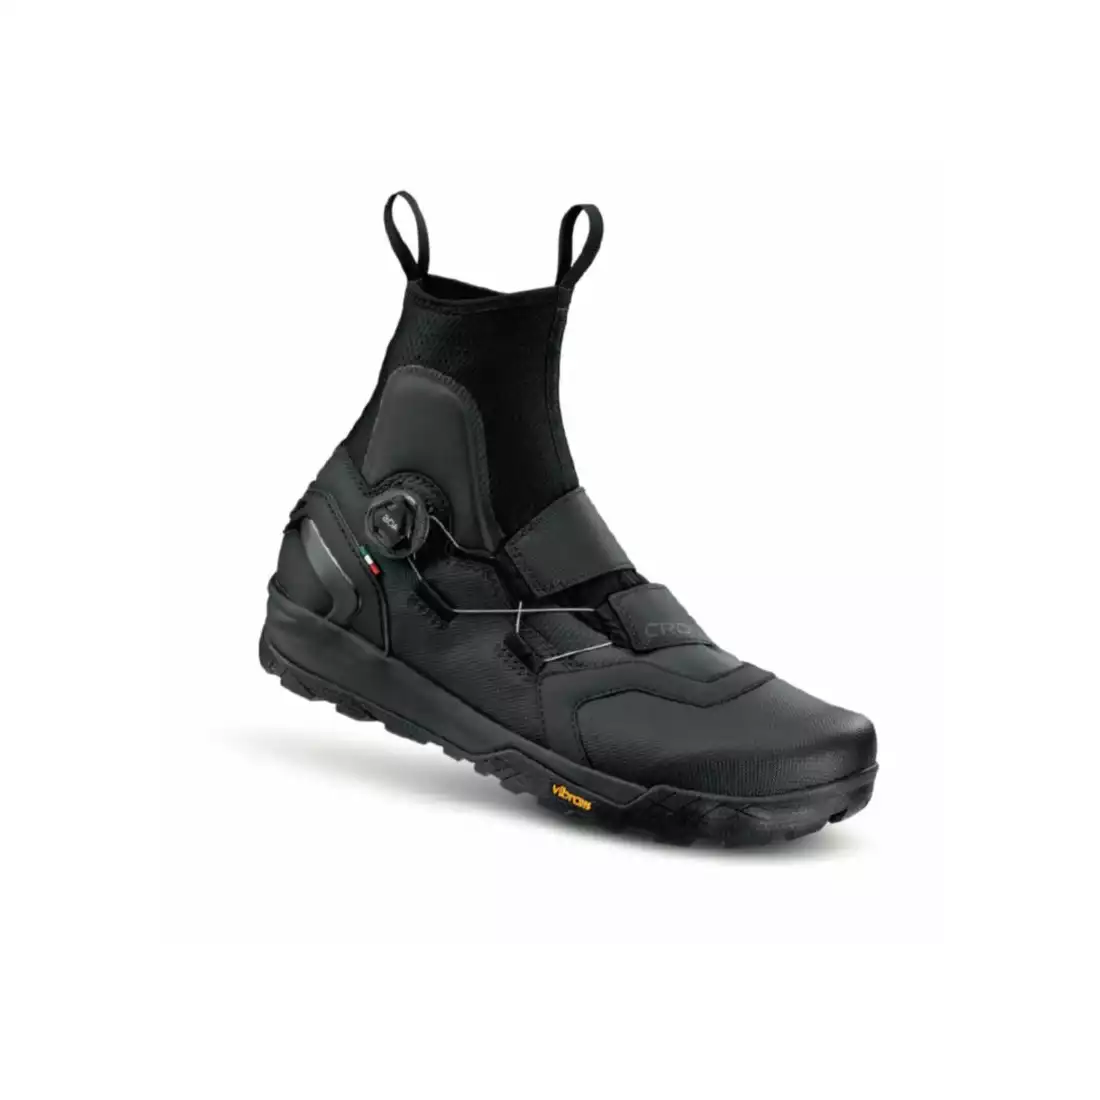 CRONO CW1E-22 pantofi de iarnă MTB pentru ciclism, negri